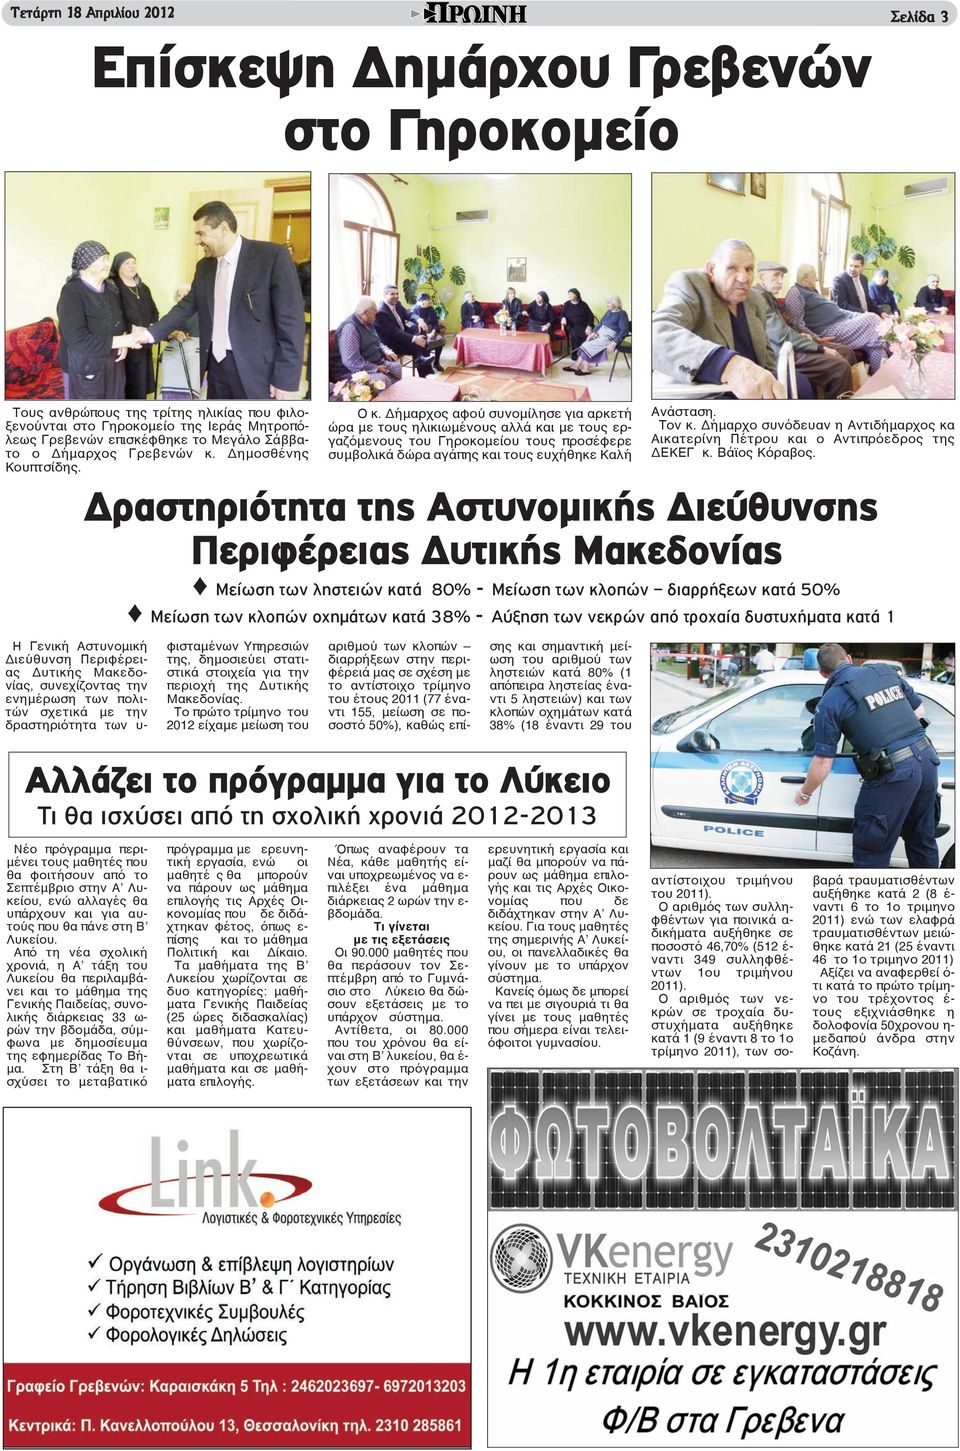 Η Γενική Αστυνομική Διεύθυνση Περιφέρειας Δυτικής Μακεδονίας, συνεχίζοντας την ενημέρωση των πολιτών σχετικά με την δραστηριότητα των υ- φισταμένων Υπηρεσιών της, δημοσιεύει στατιστικά στοιχεία για